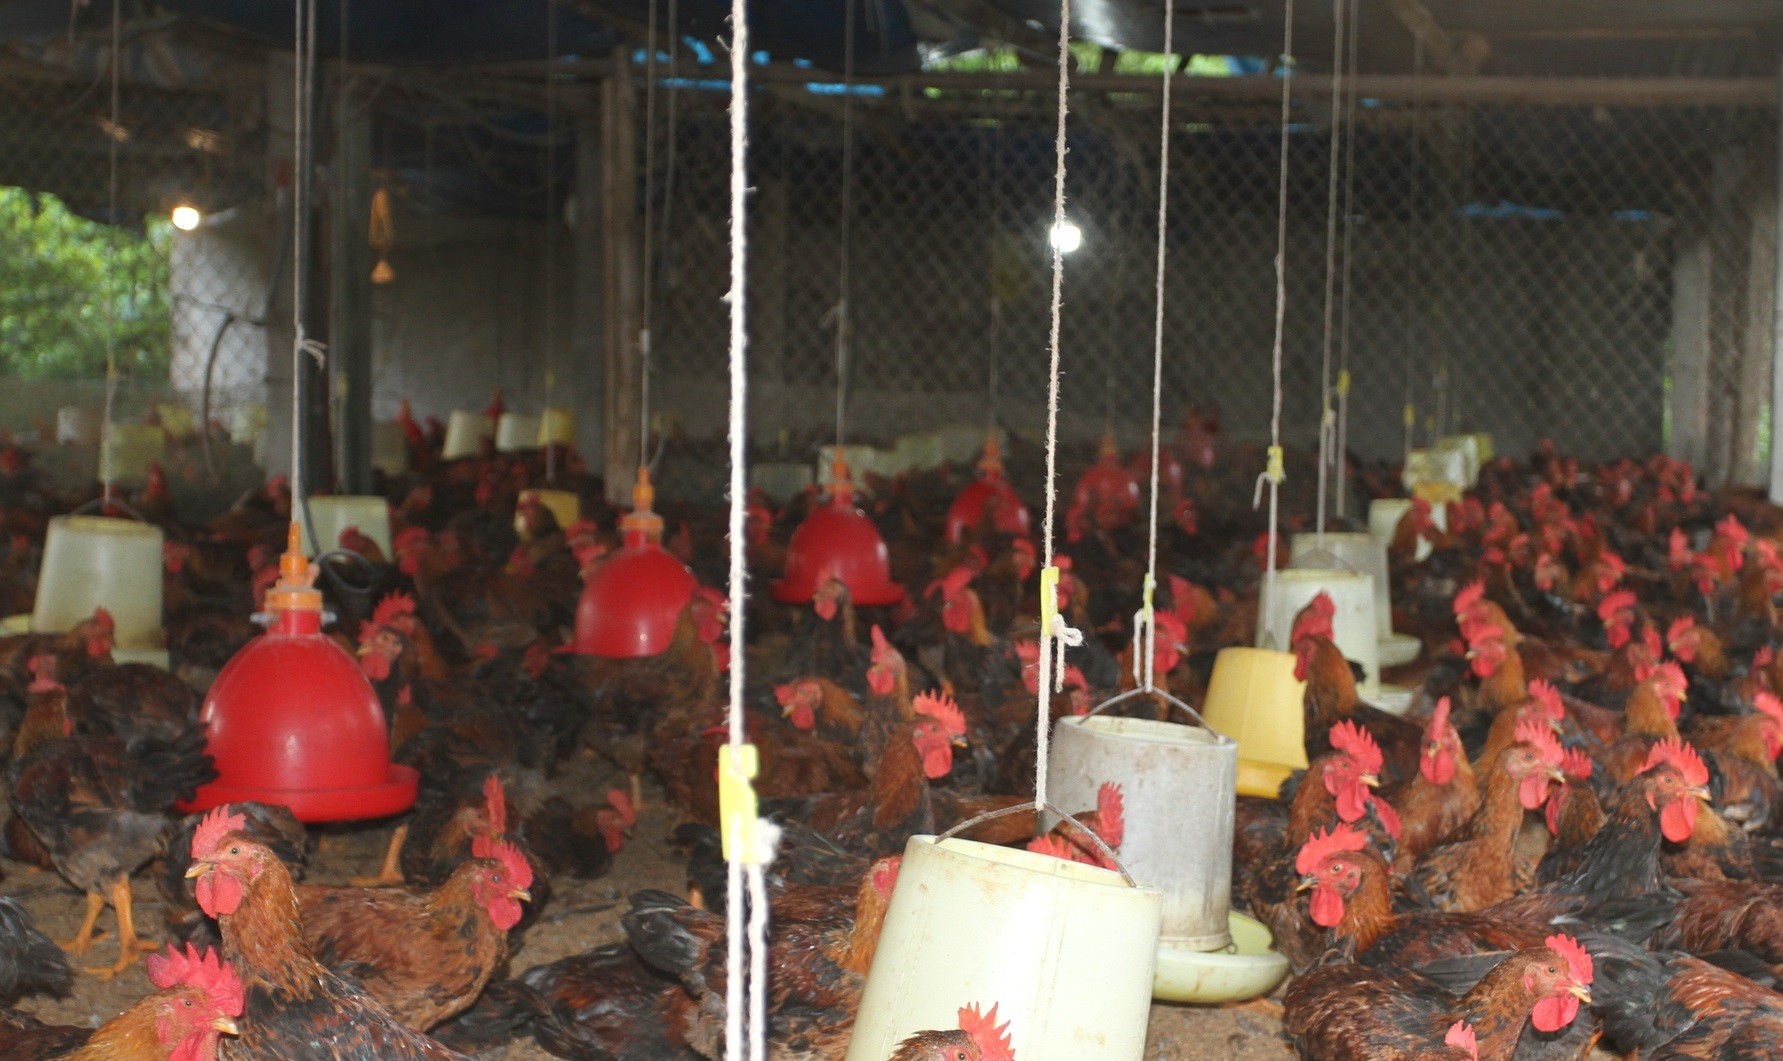 
Từ đầu năm đến hiện tại, gia đình của ông Quang đã tiến hành xuất bán được hai lứa gà với khoảng 30 tấn từ đó thu về được khoản lợi nhuận khoảng 400 triệu đồng
